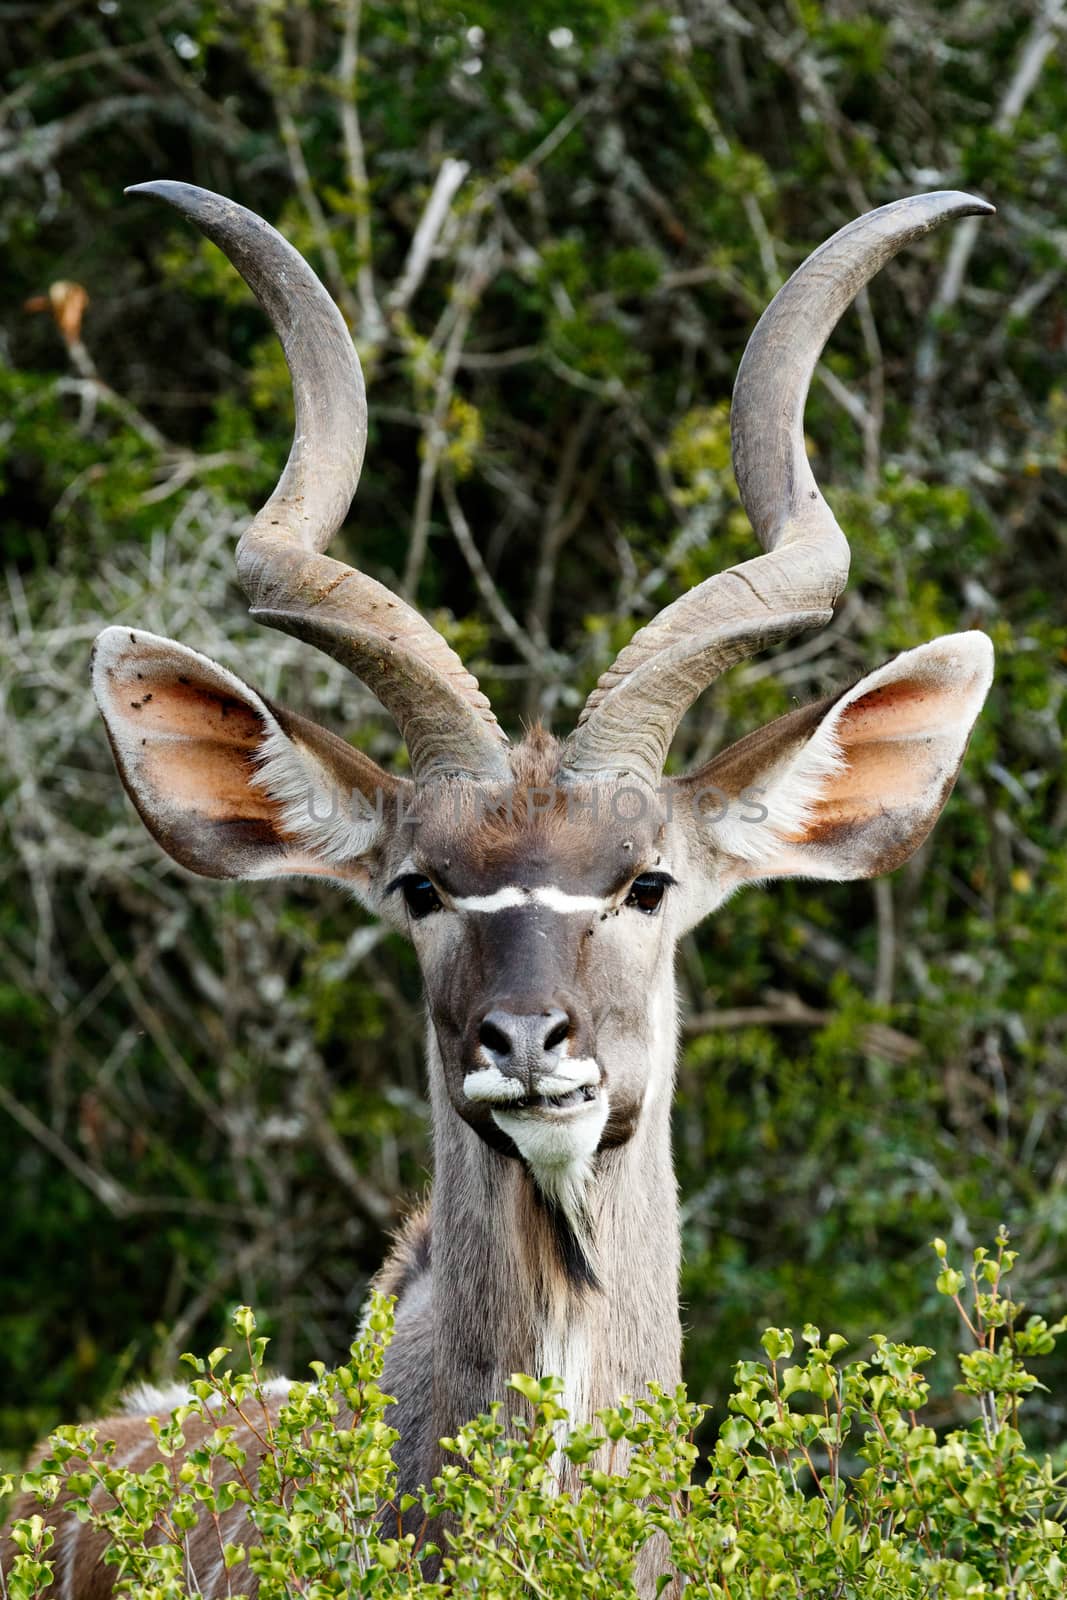 Grinding Your Teeth - Greater Kudu - Tragelaphus strepsiceros by markdescande